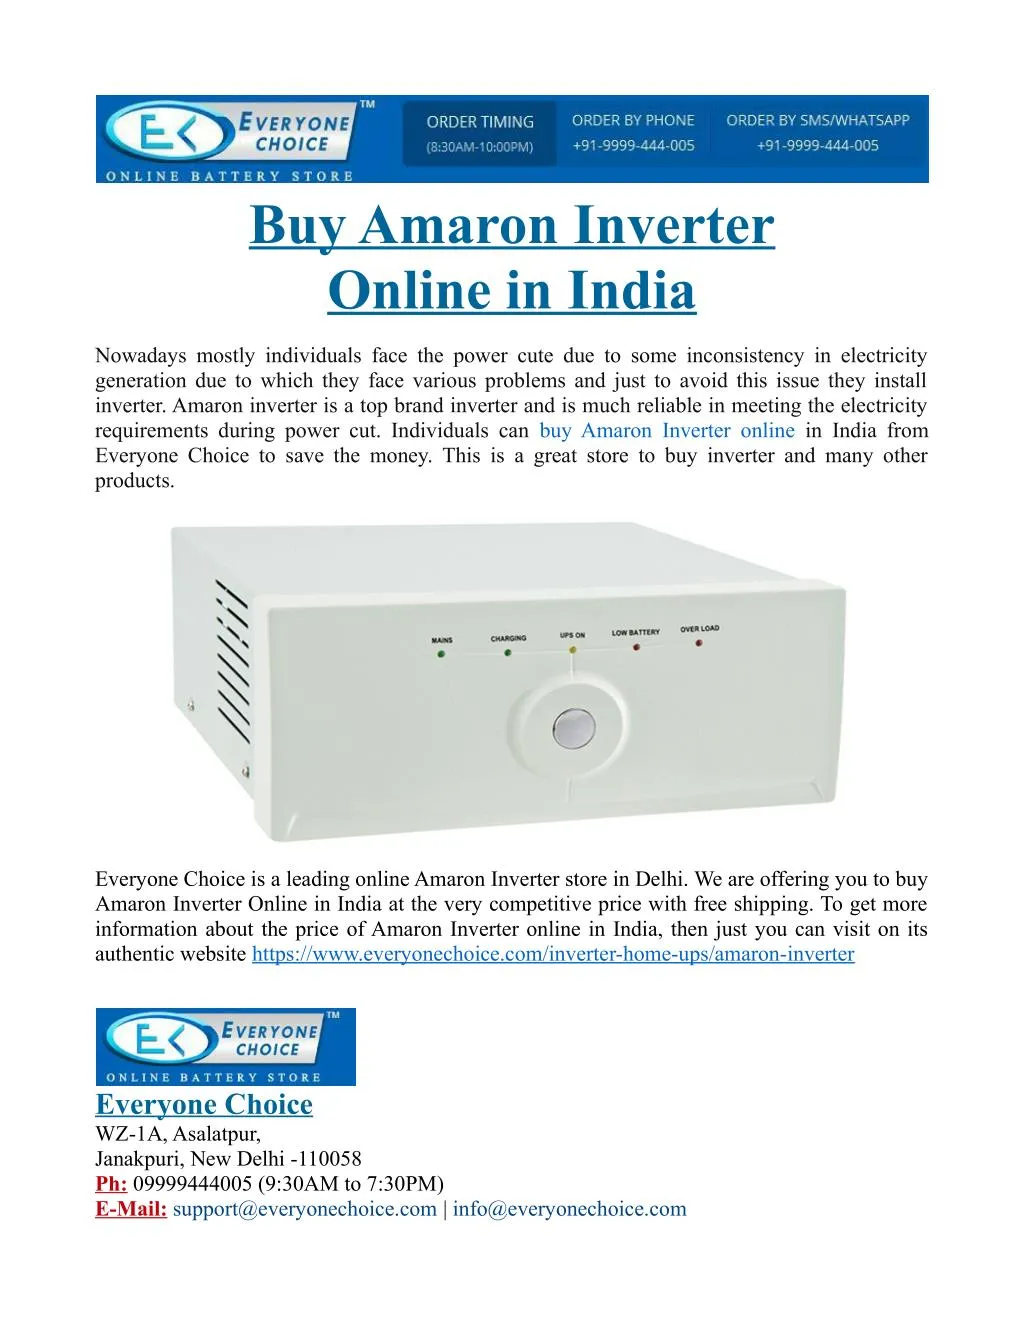 buy amaron inverter online in india